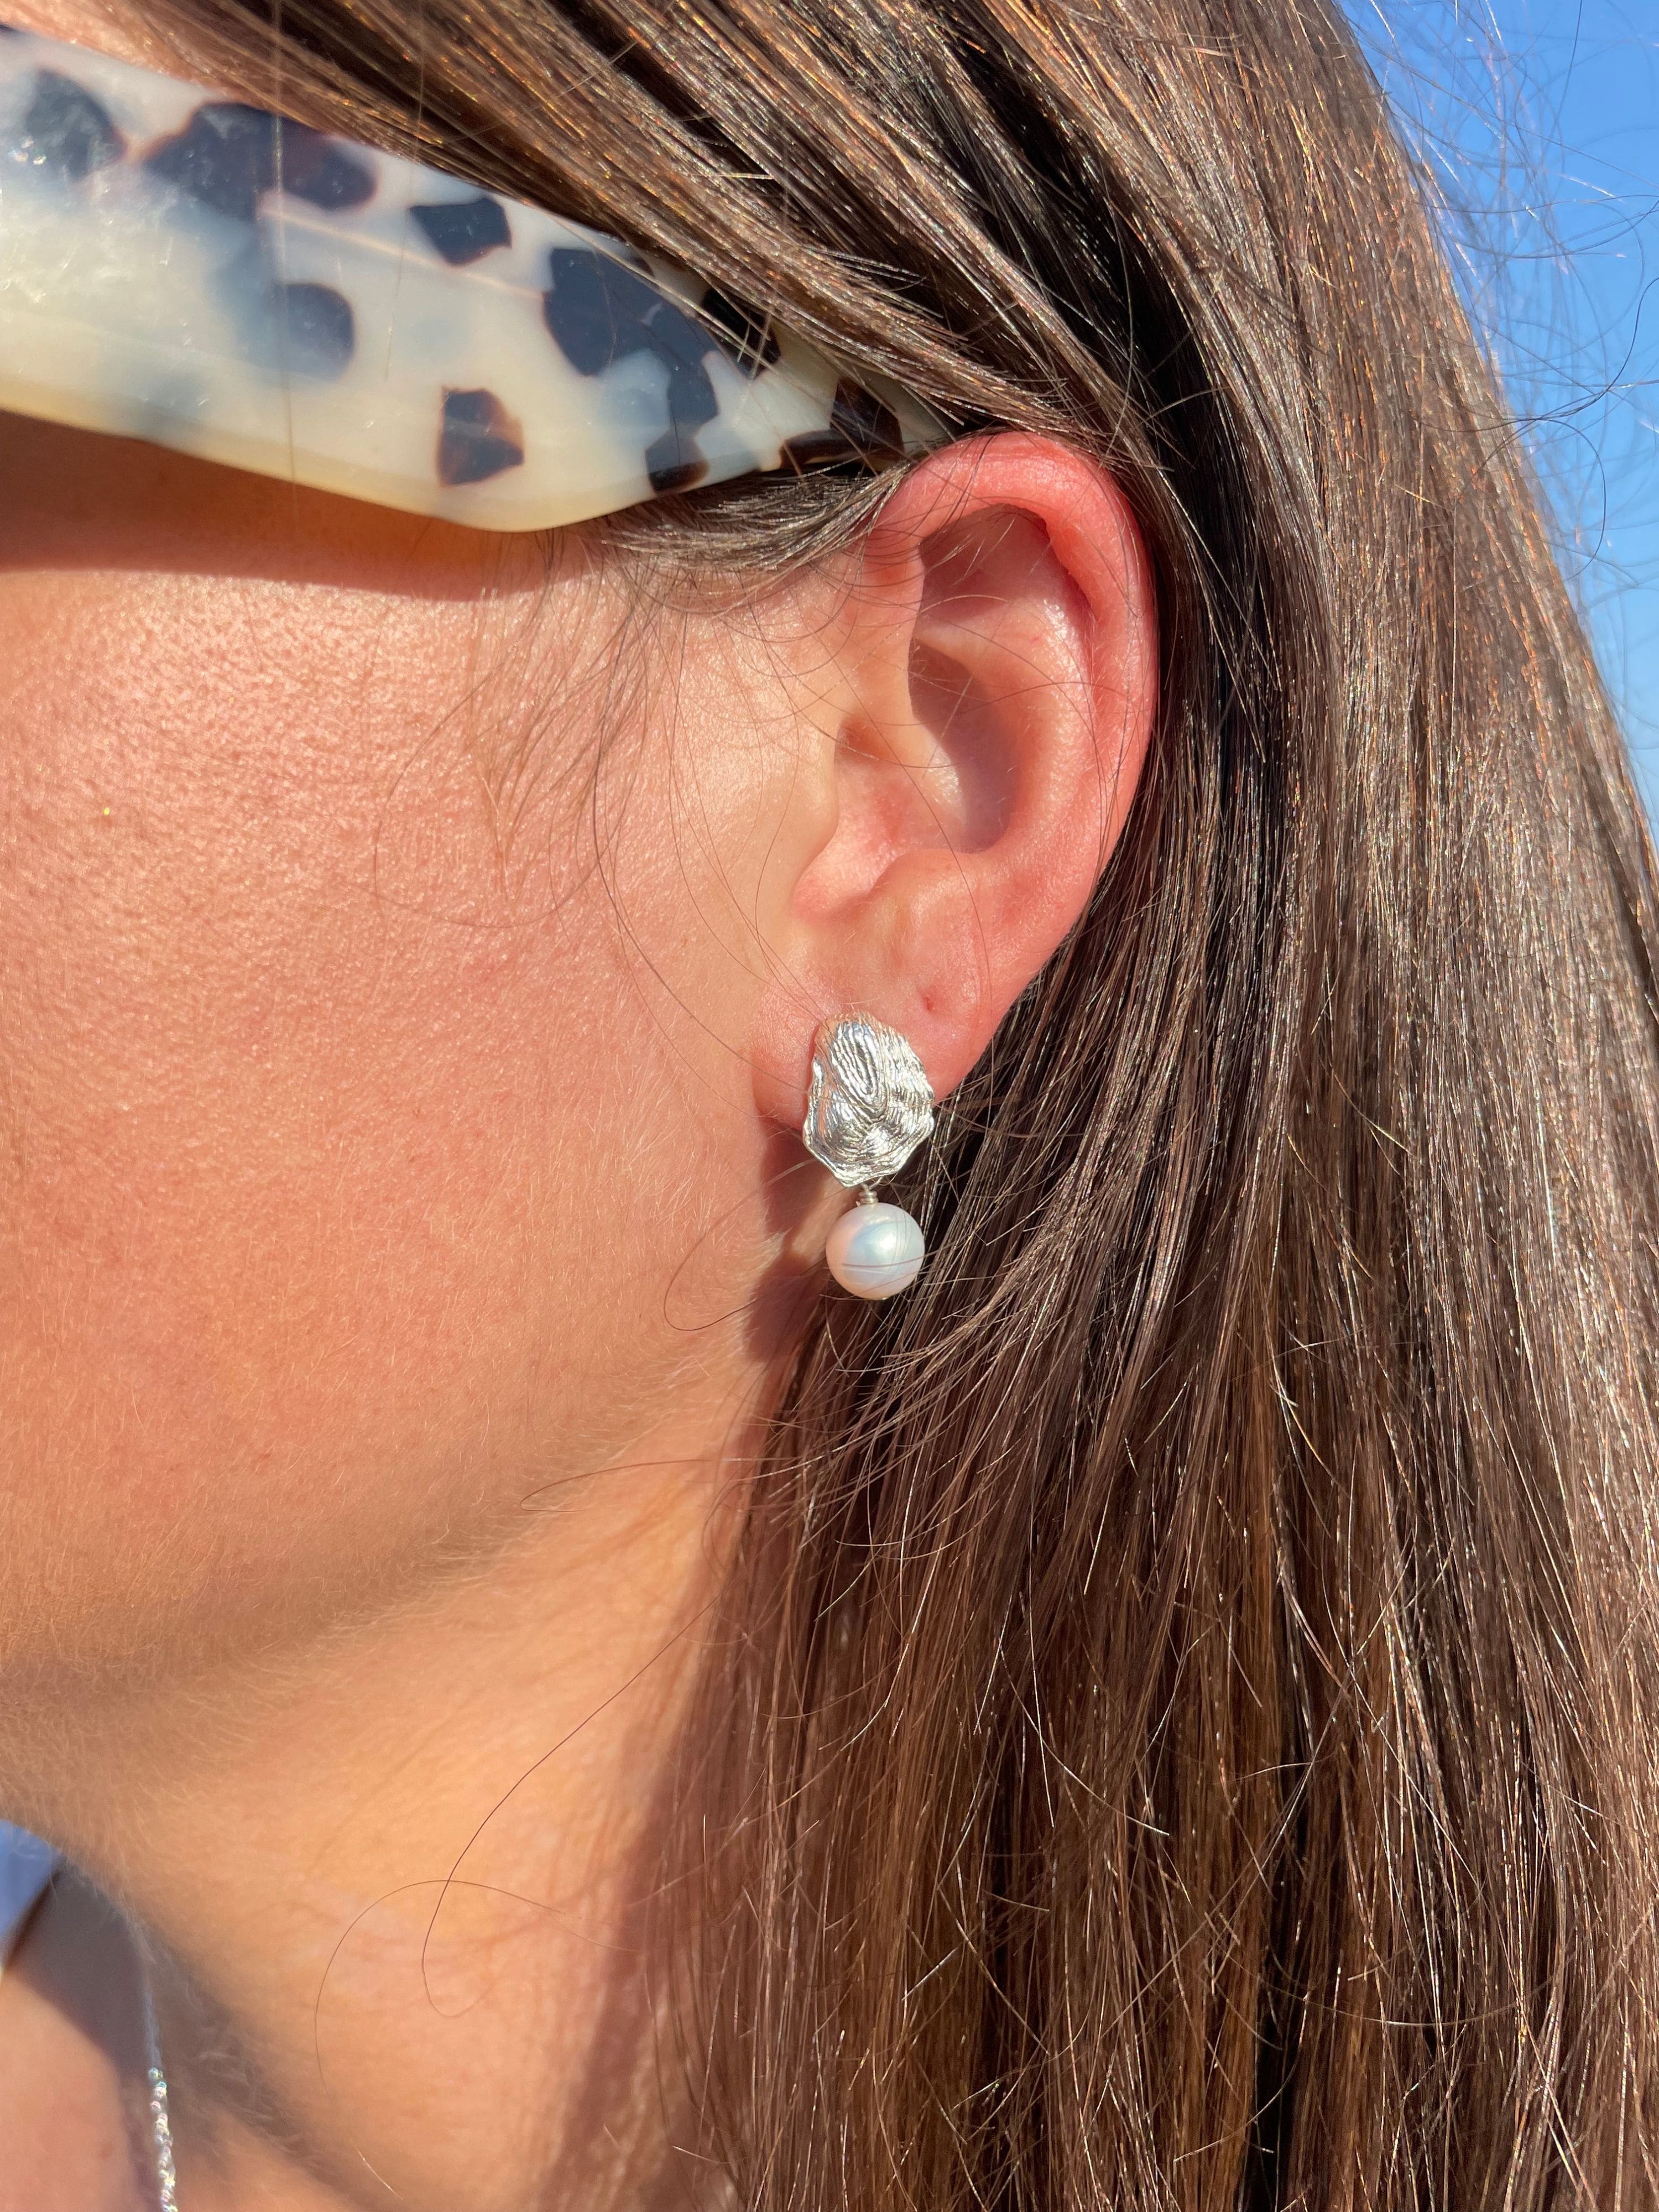 Seabrook Earrings in Silver